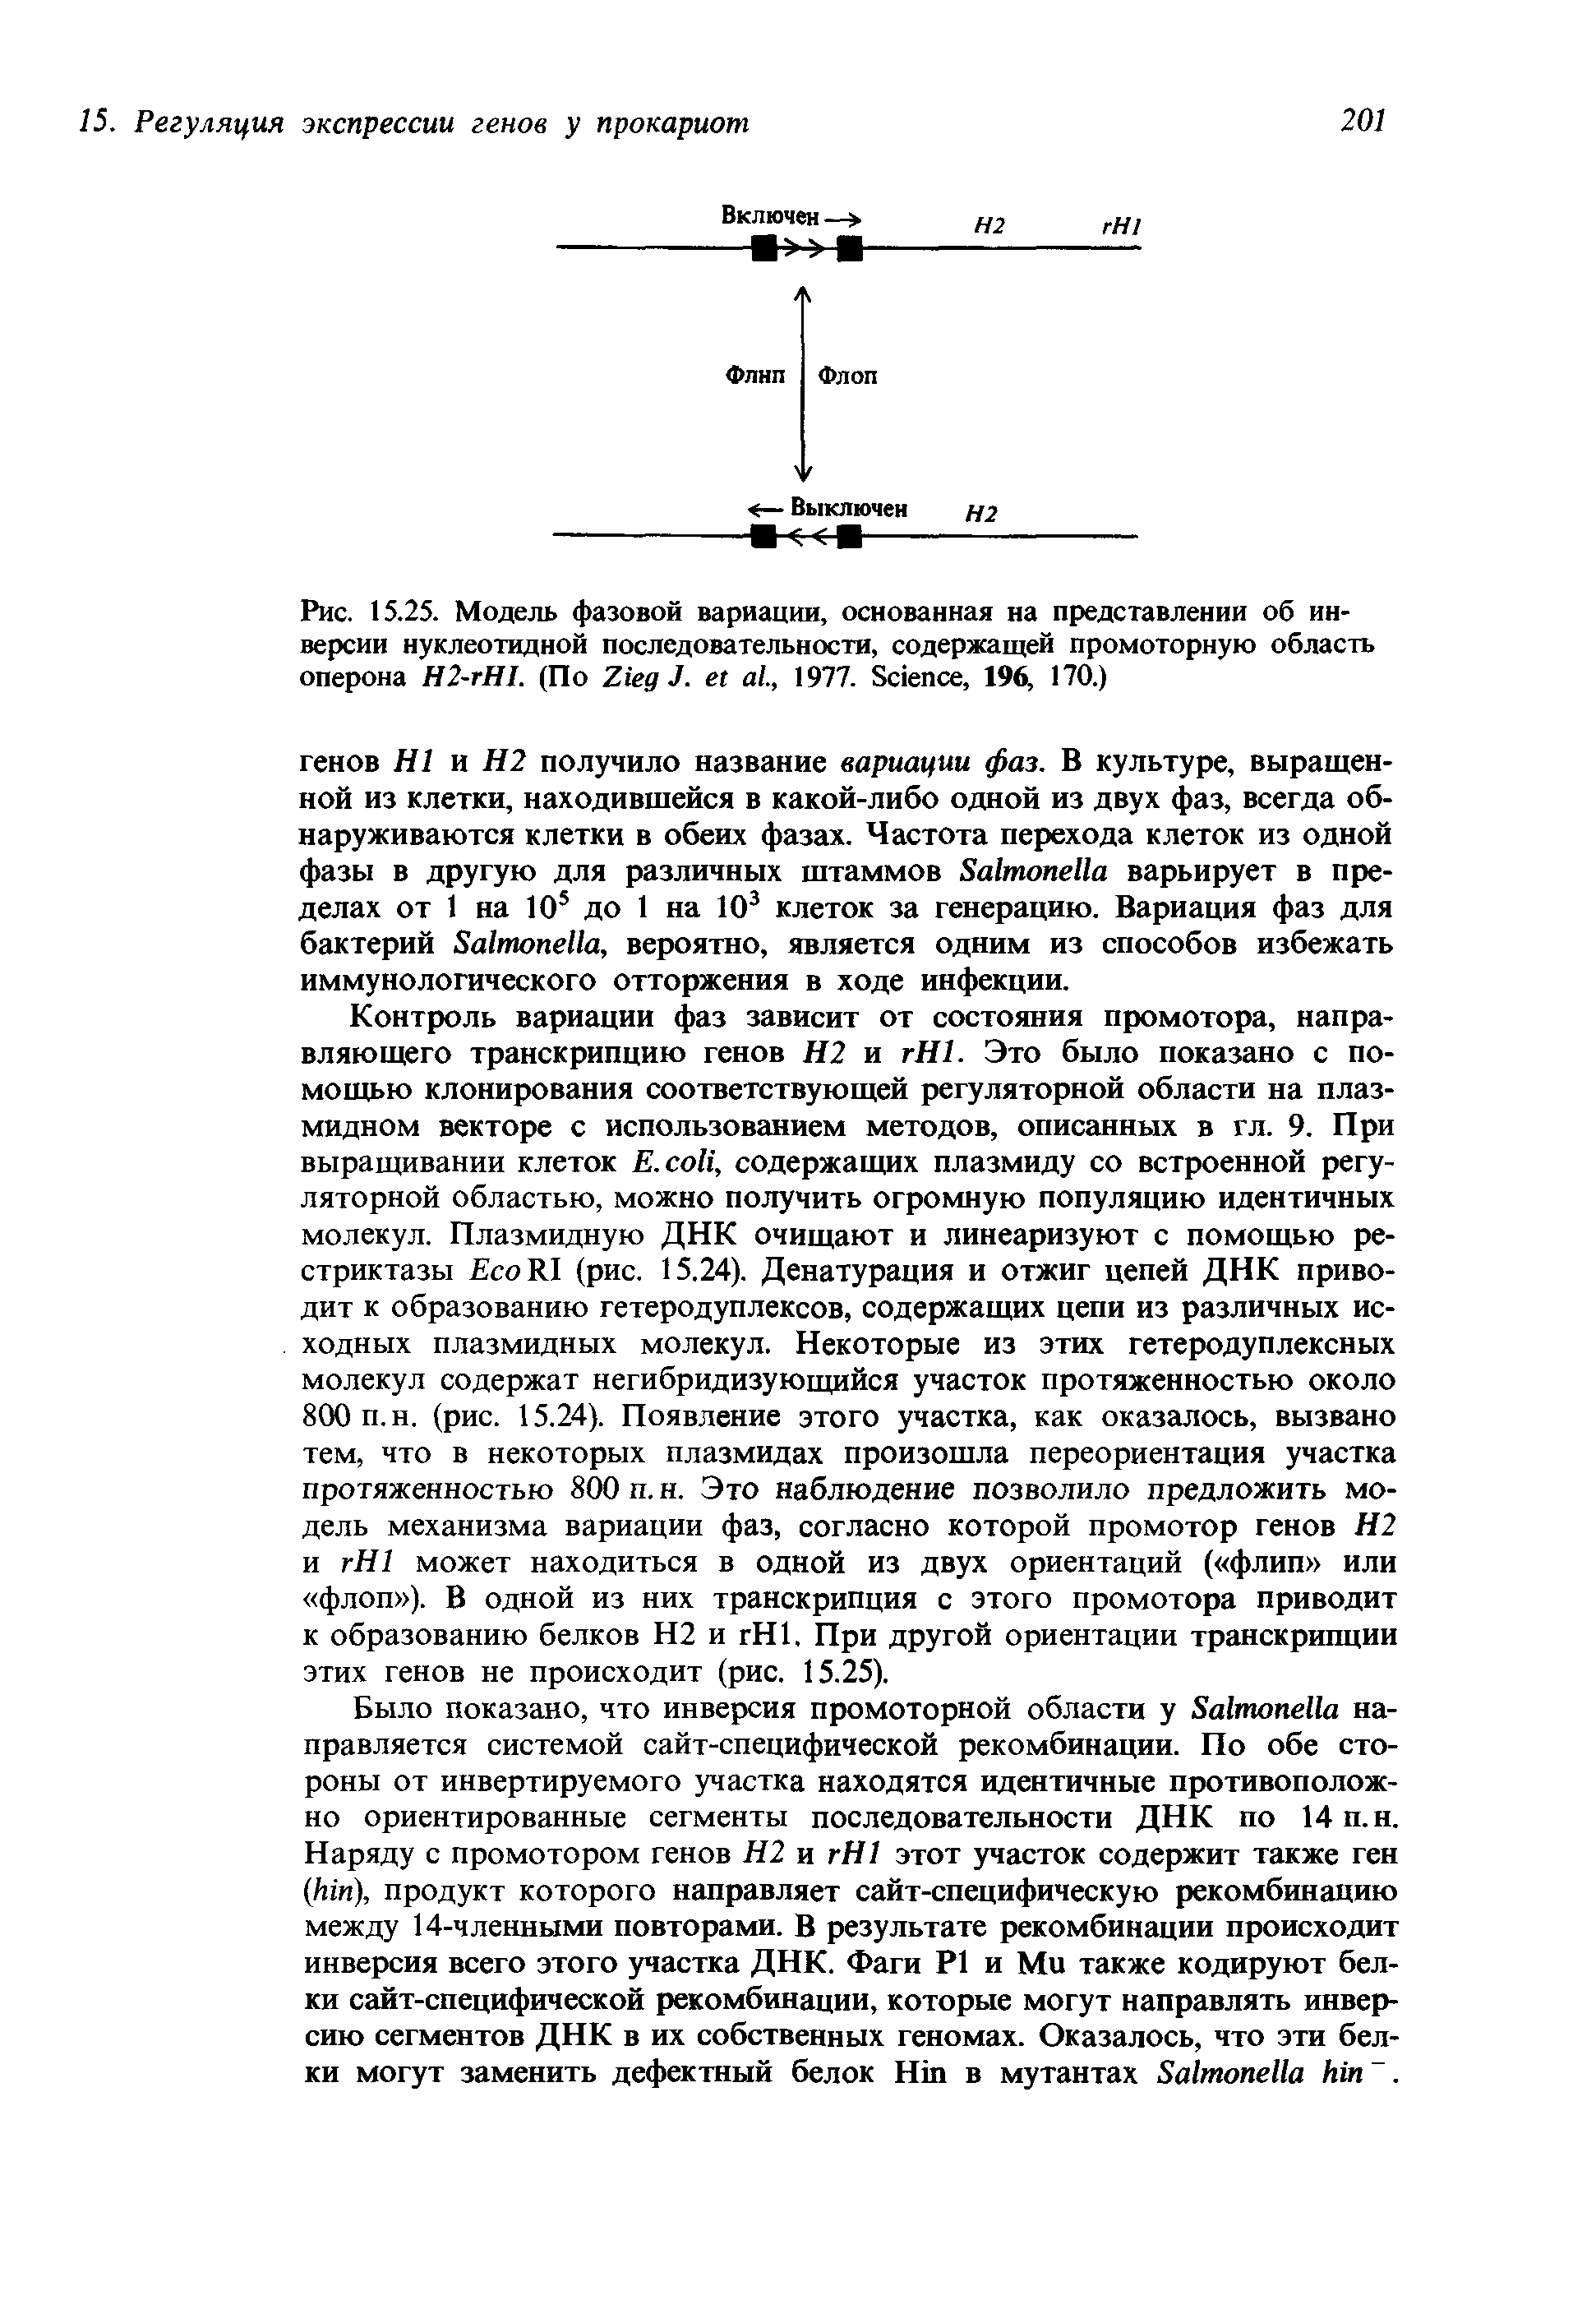 Рис. 15.25. Модель фазовой вариации, основанная на представлении об инверсии нуклеотидной последовательности, содержащей промоторную область оперона Н2-гН1. (По Z J. ., 1977. S , 196, 170.)...